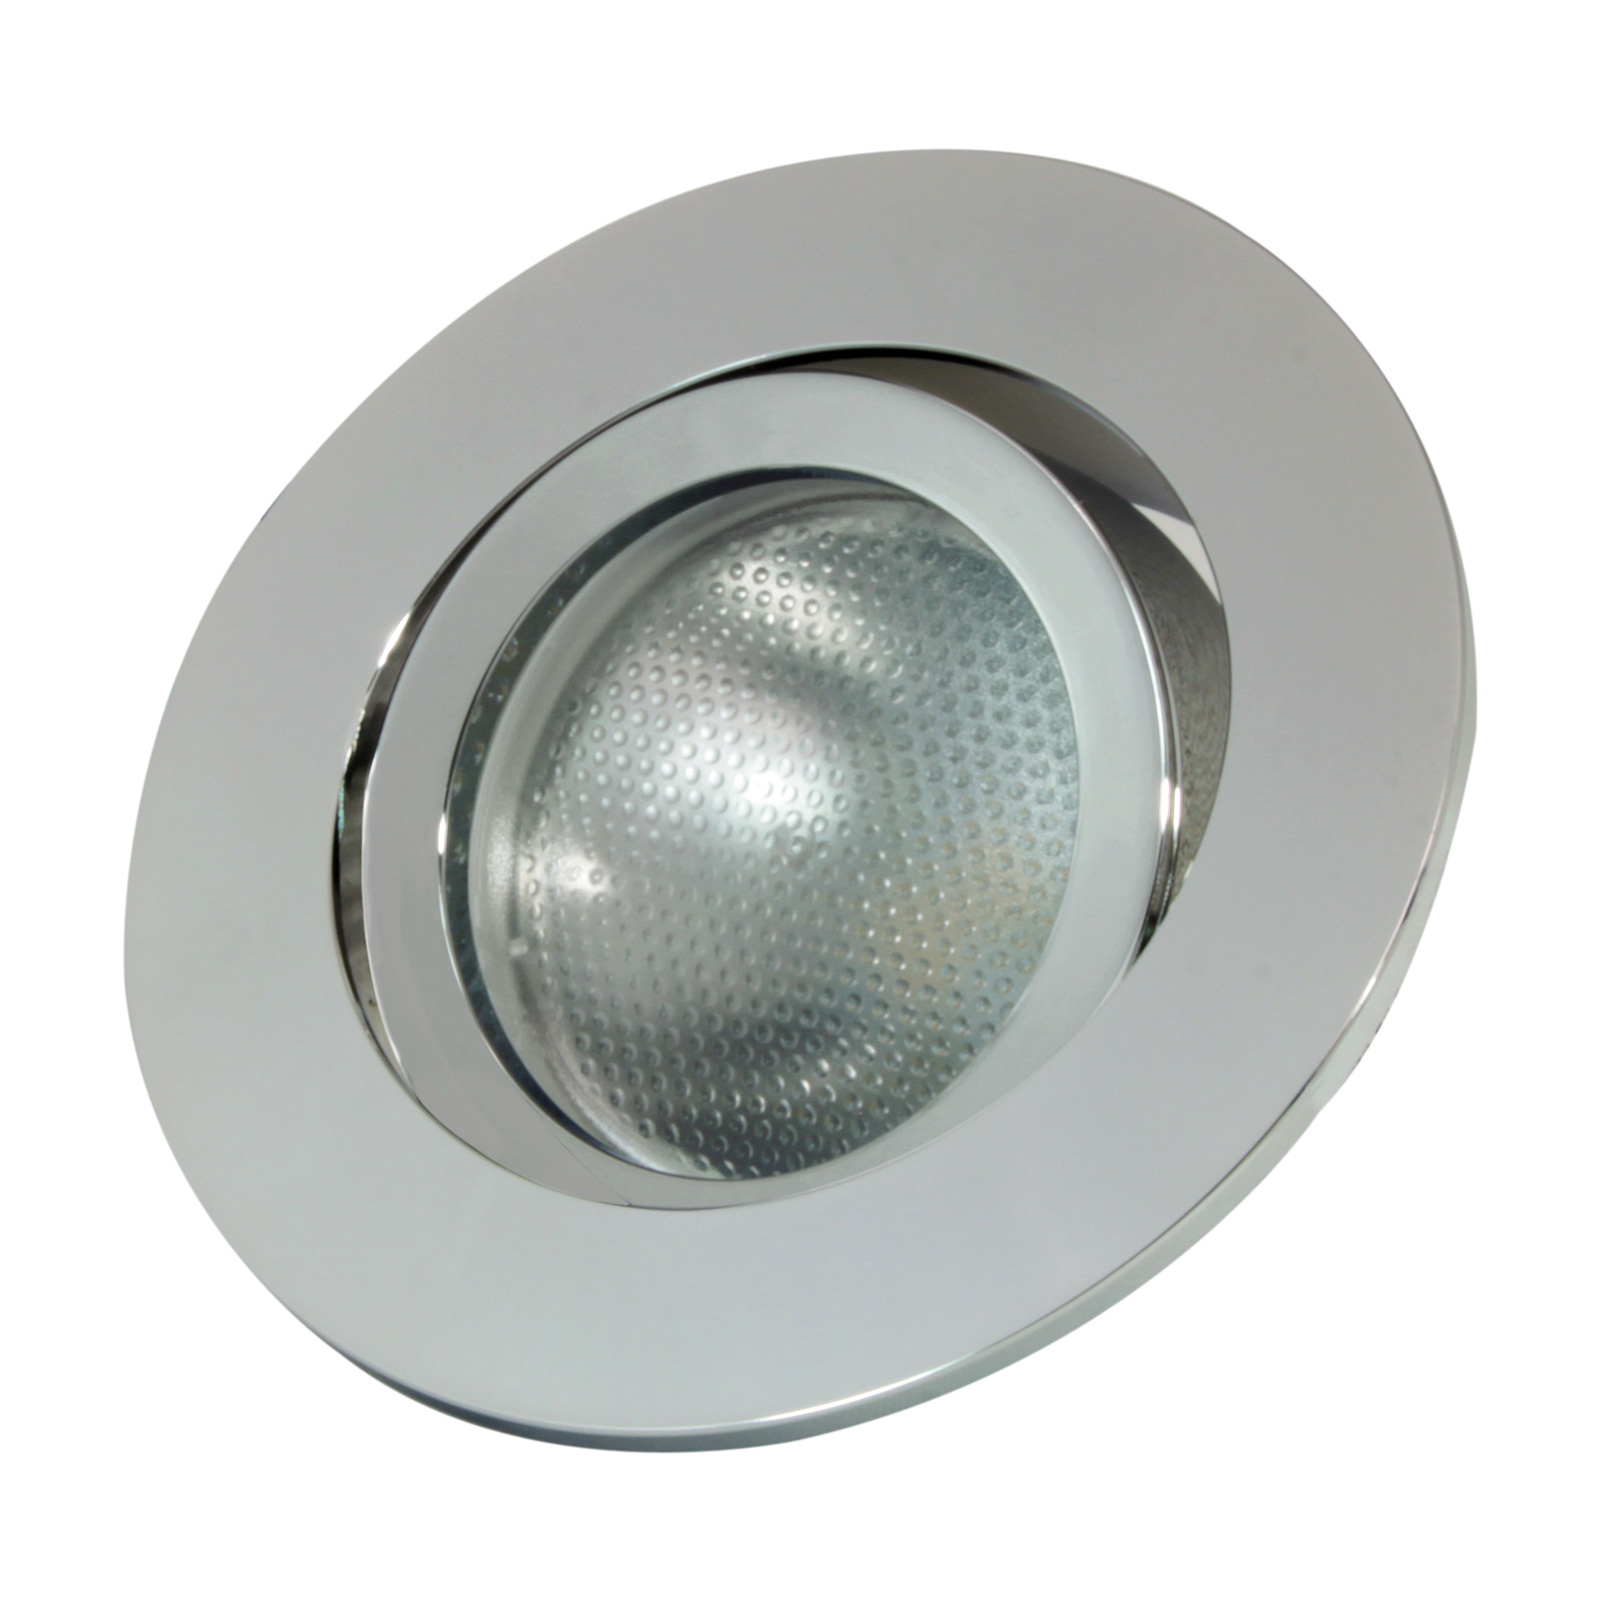 LED inbouwspot GU10.3, rond, zilver